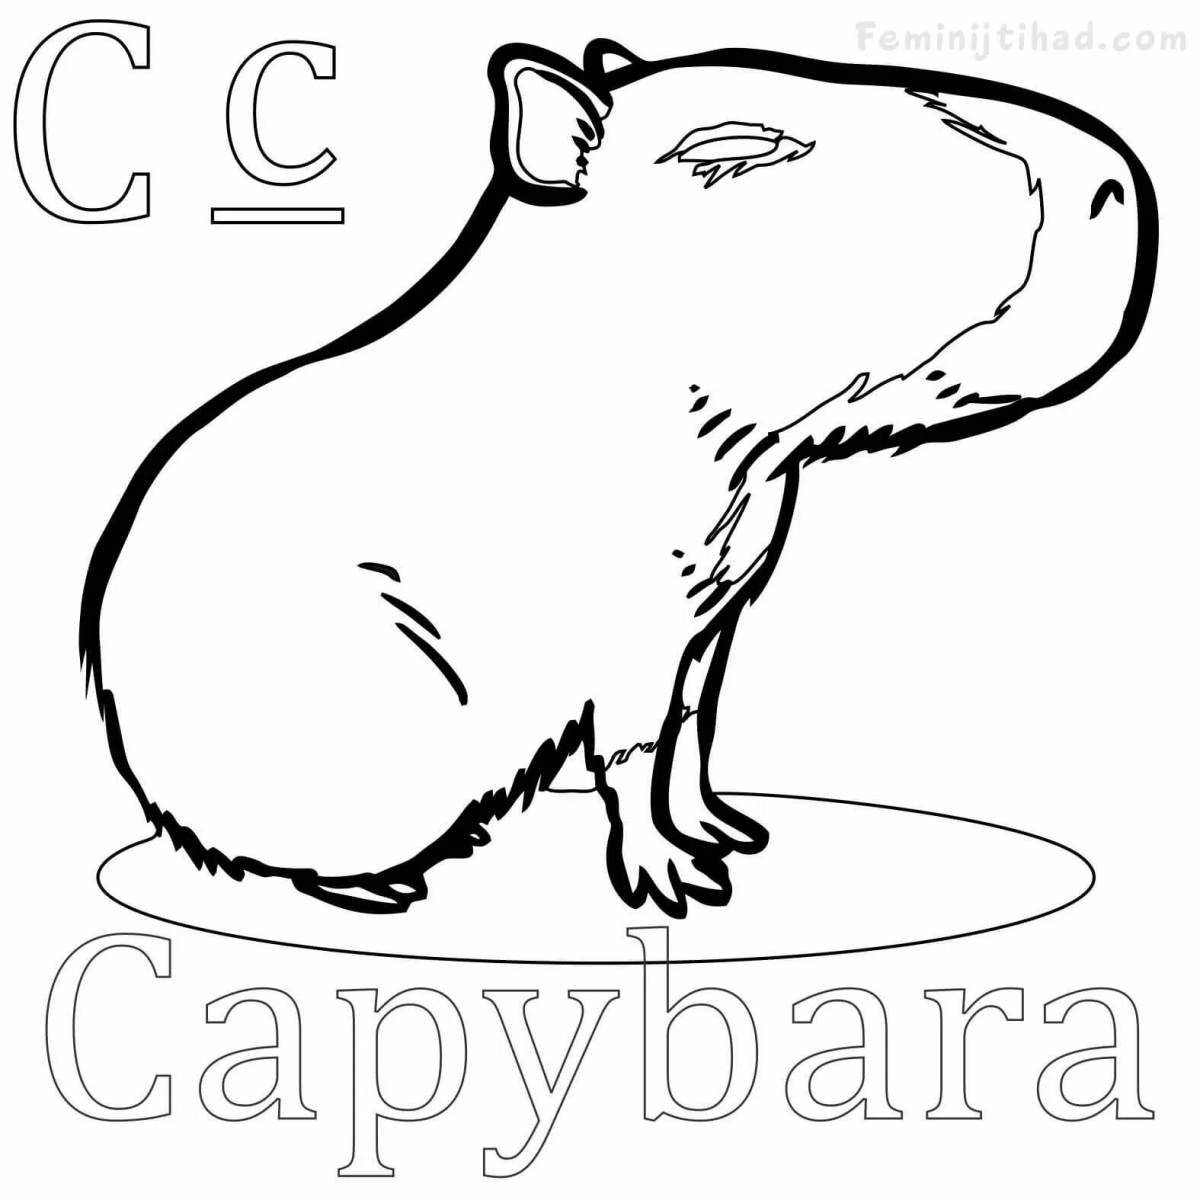 A fun capybara coloring book for kids